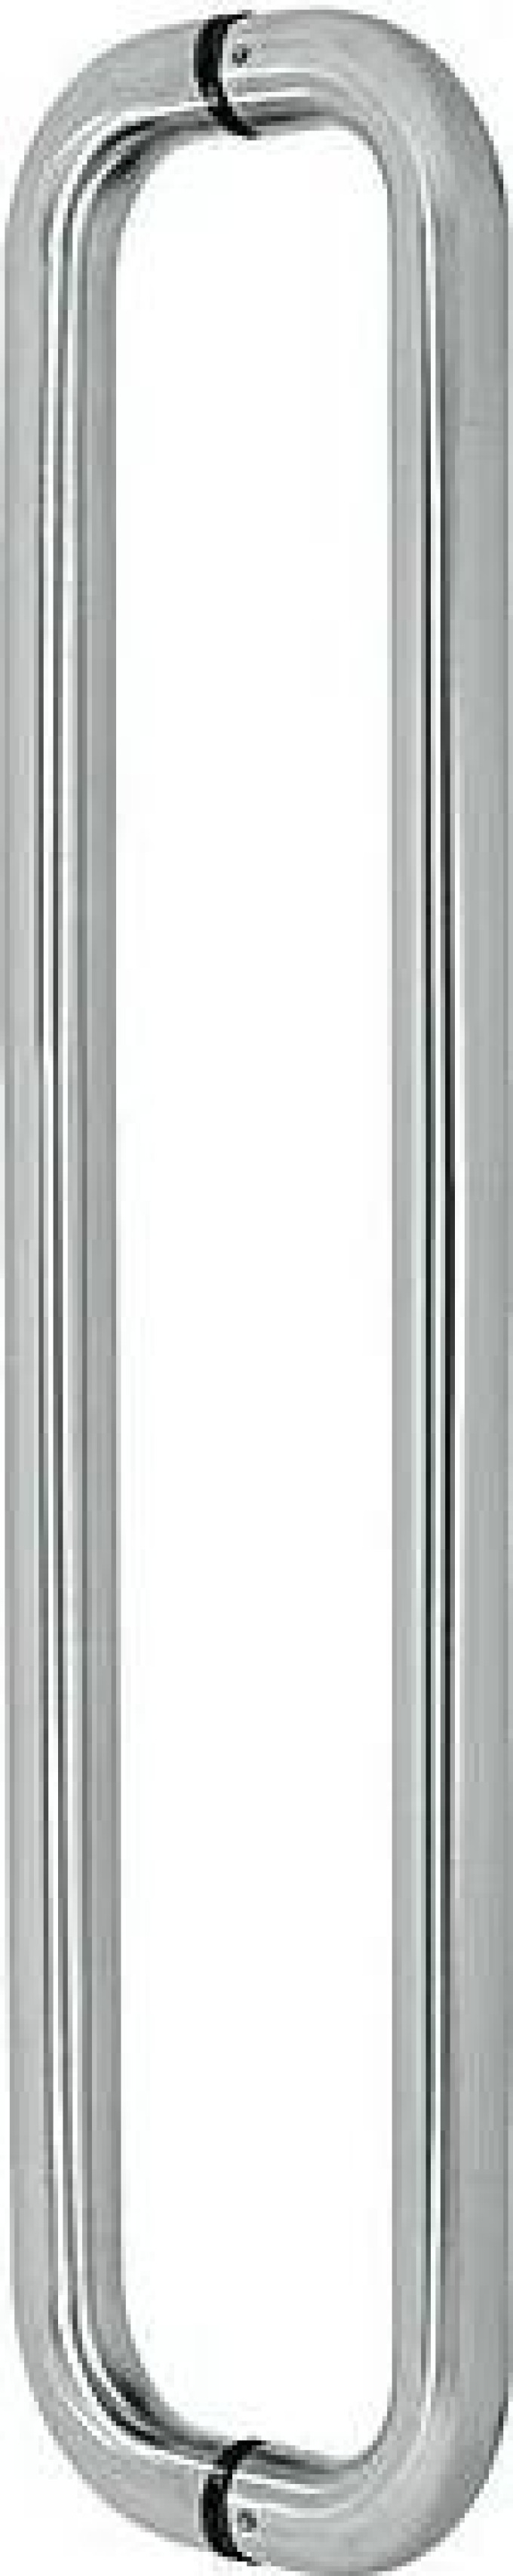 Madlo EUROLATON pro skleněné a dřevěné dveře - 81 (nerez), 630 x 600 x 80 (pár)